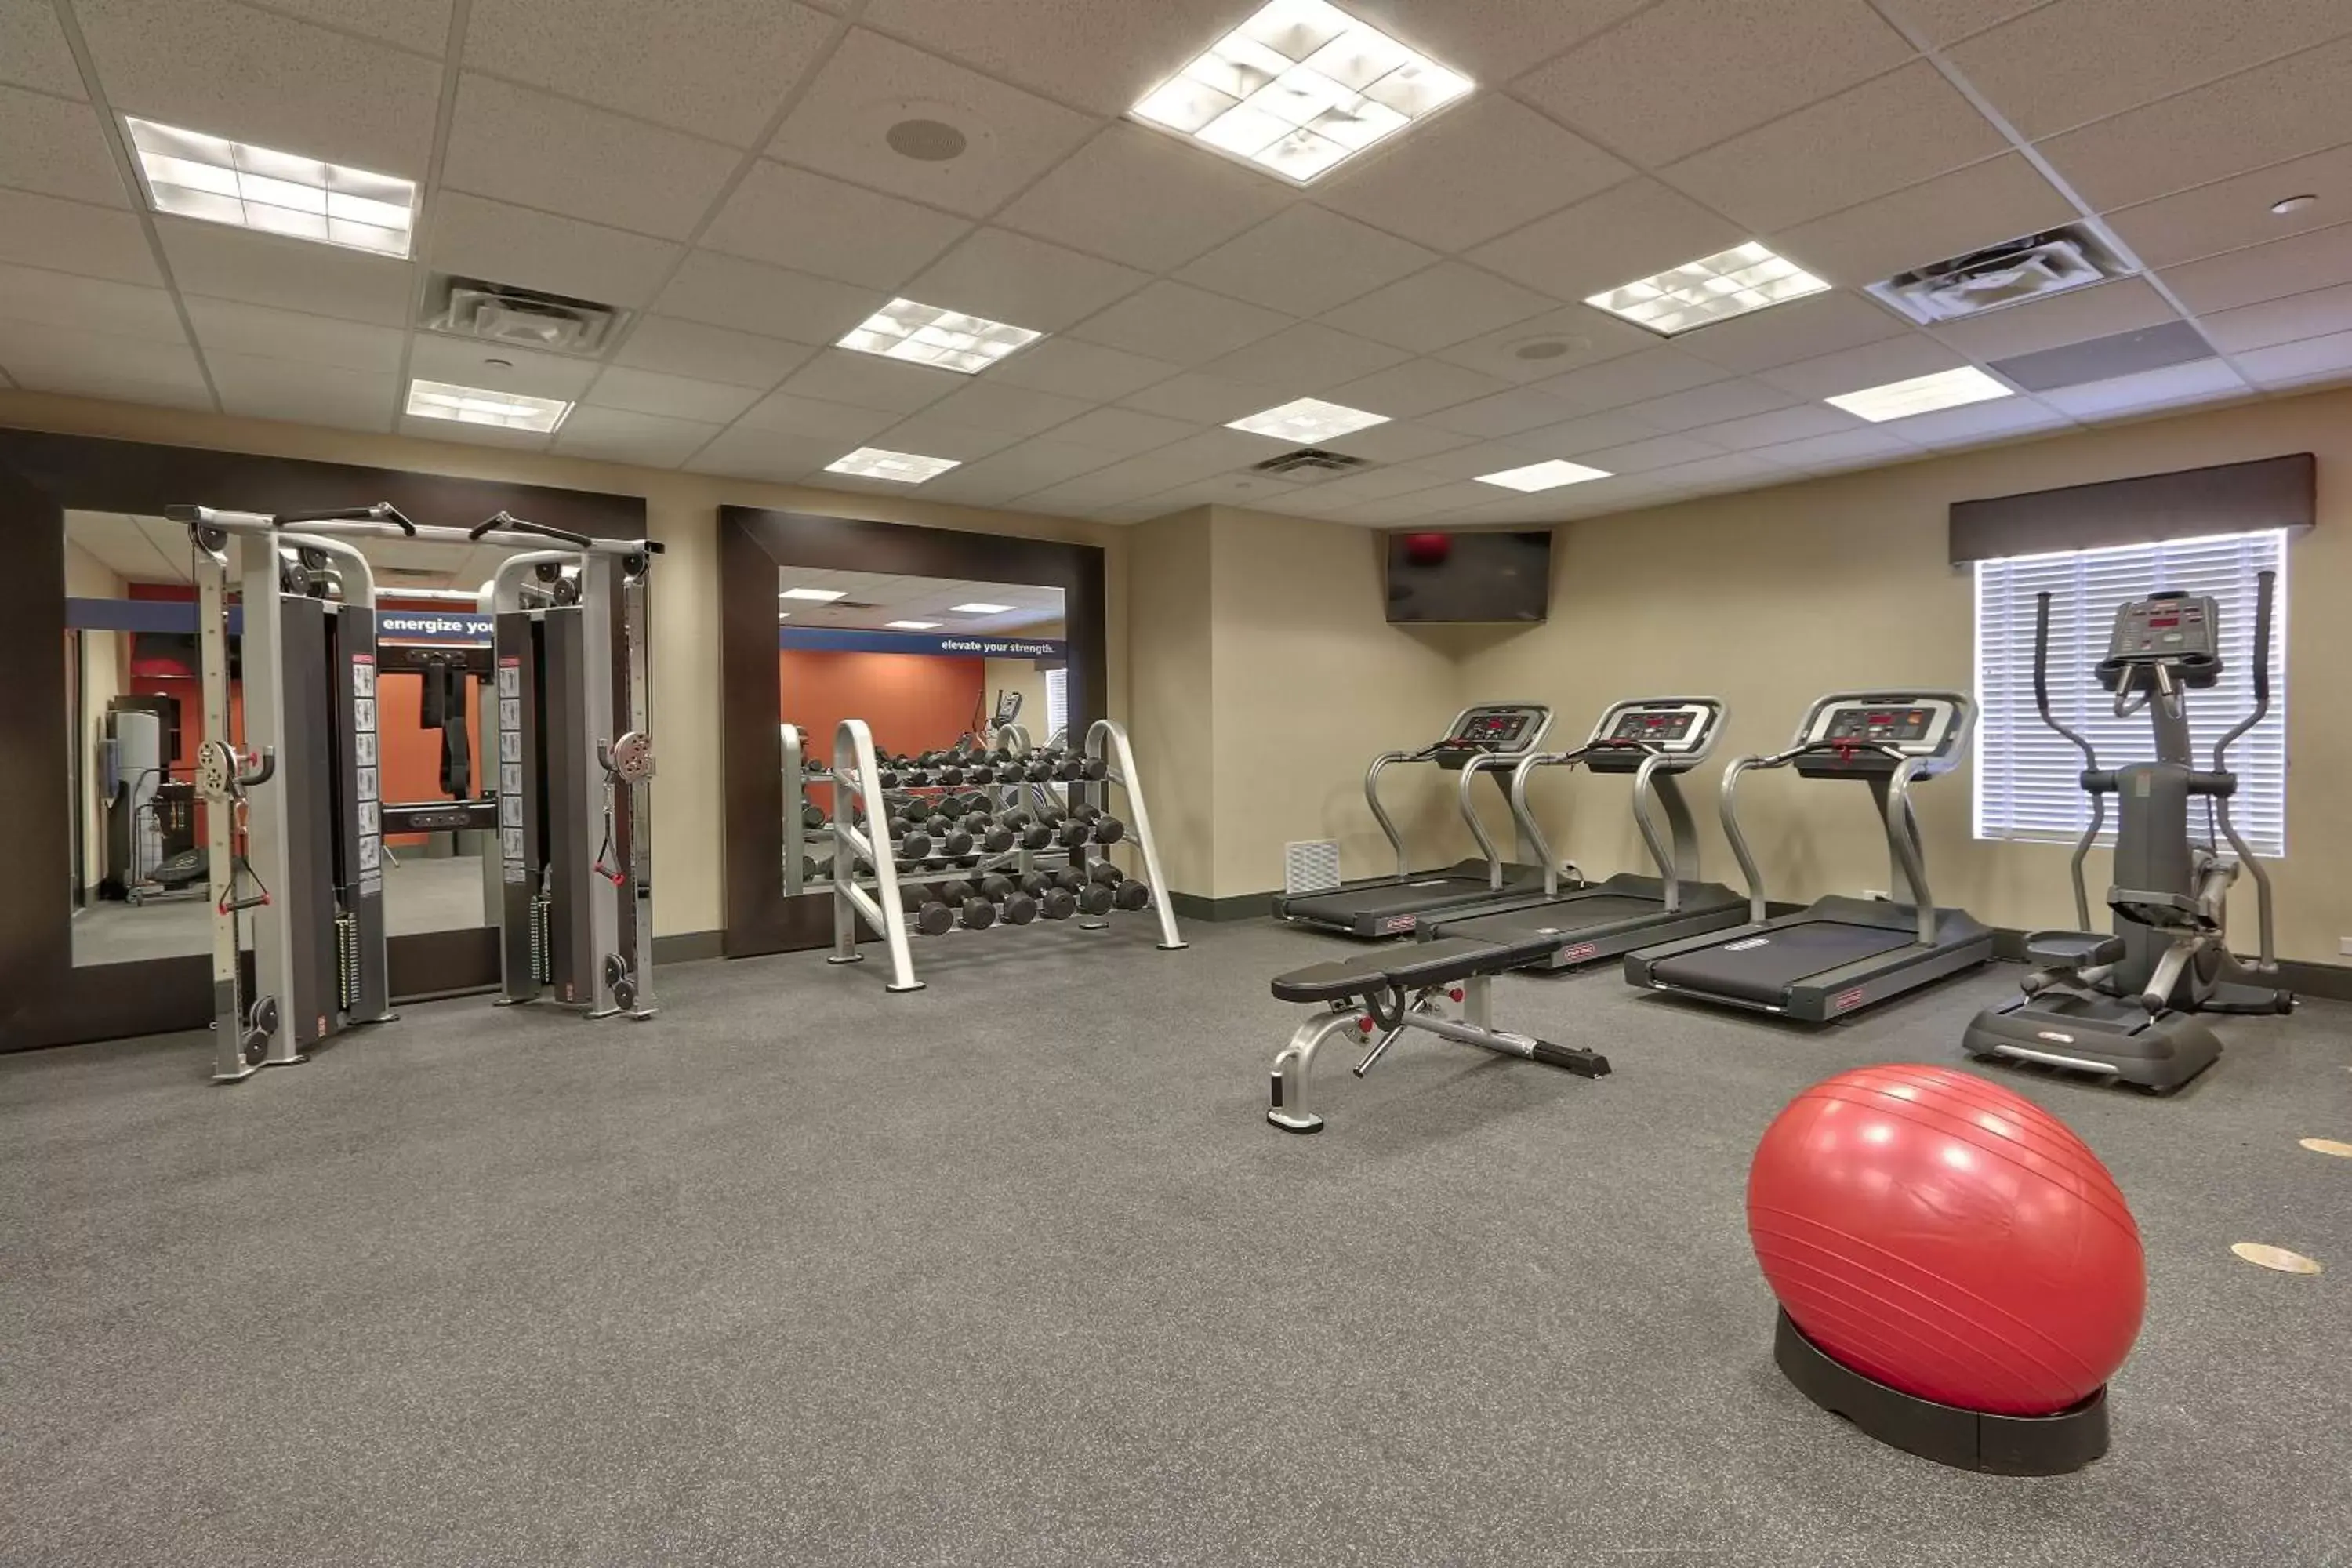 Fitness centre/facilities, Fitness Center/Facilities in Hampton Inn & Suites Albuquerque Airport